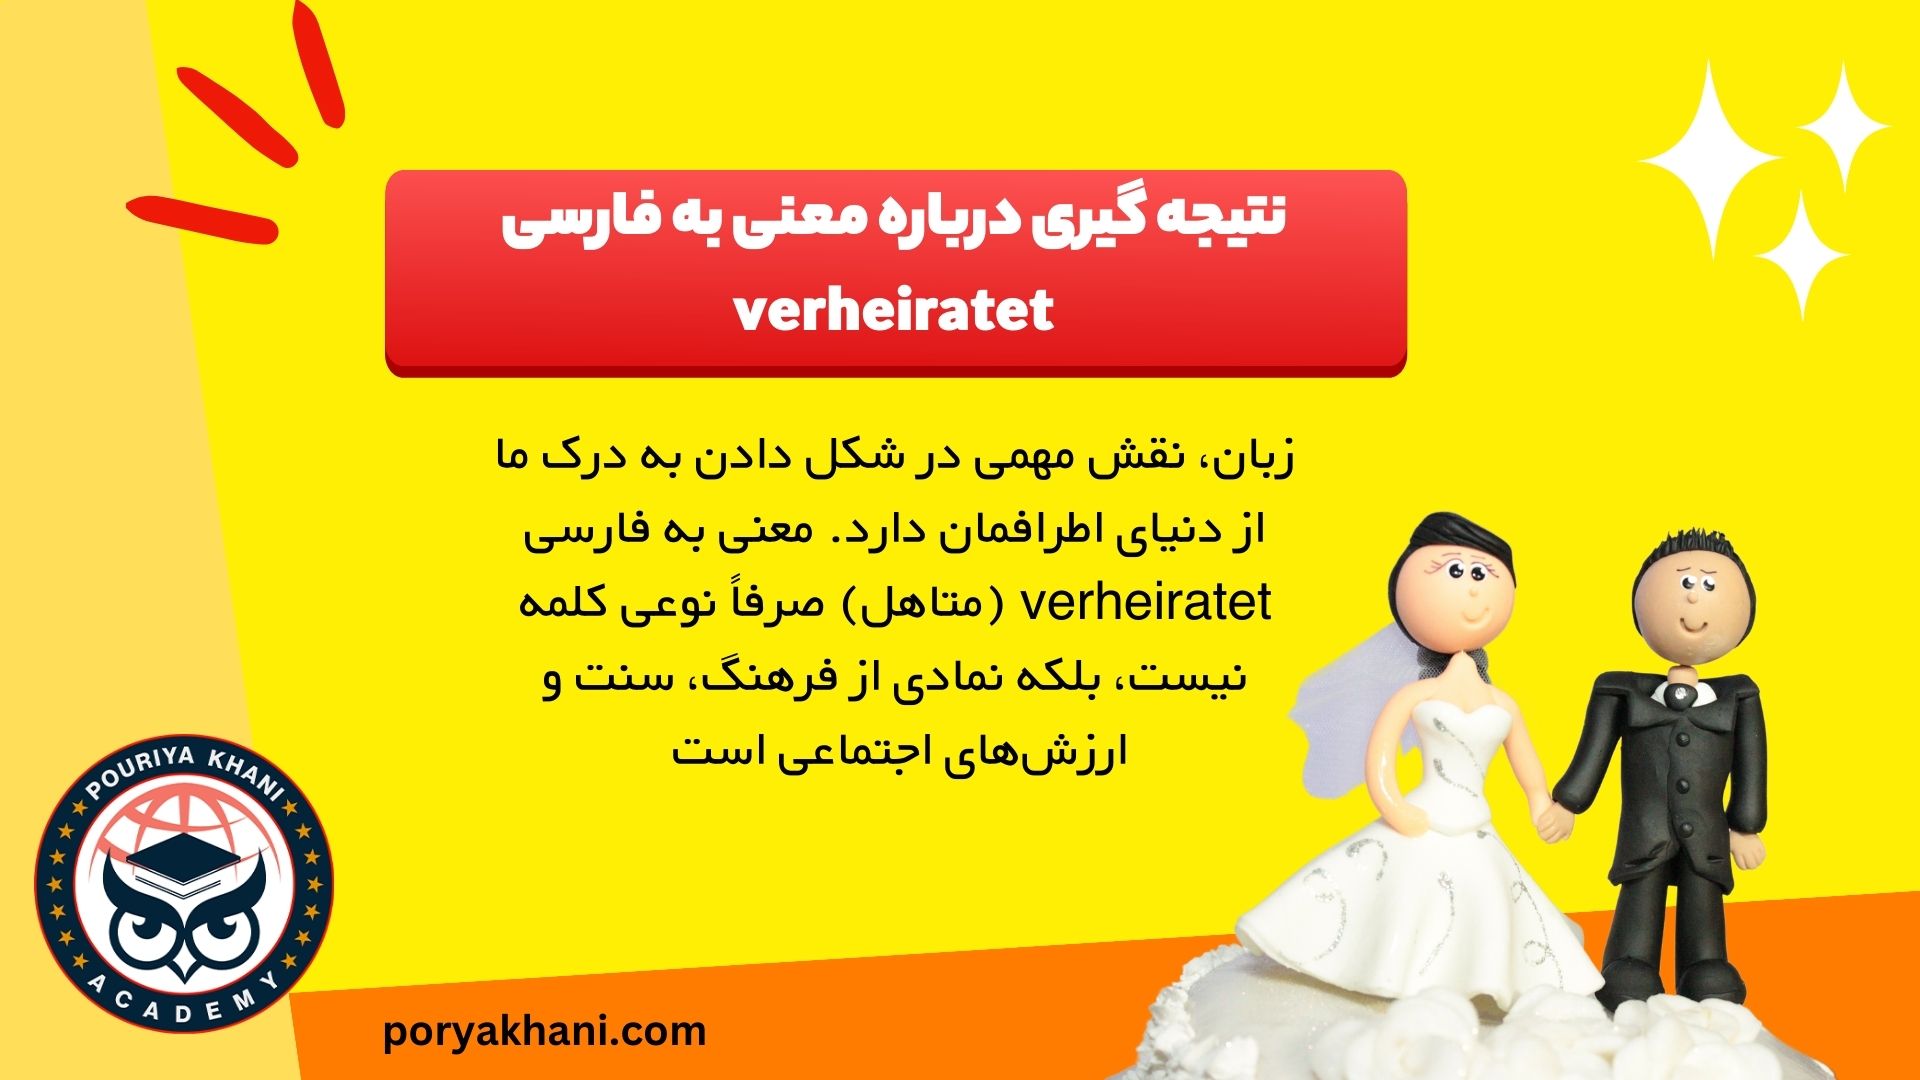 نتیجه گیری درباره معنی به فارسی verheiratet